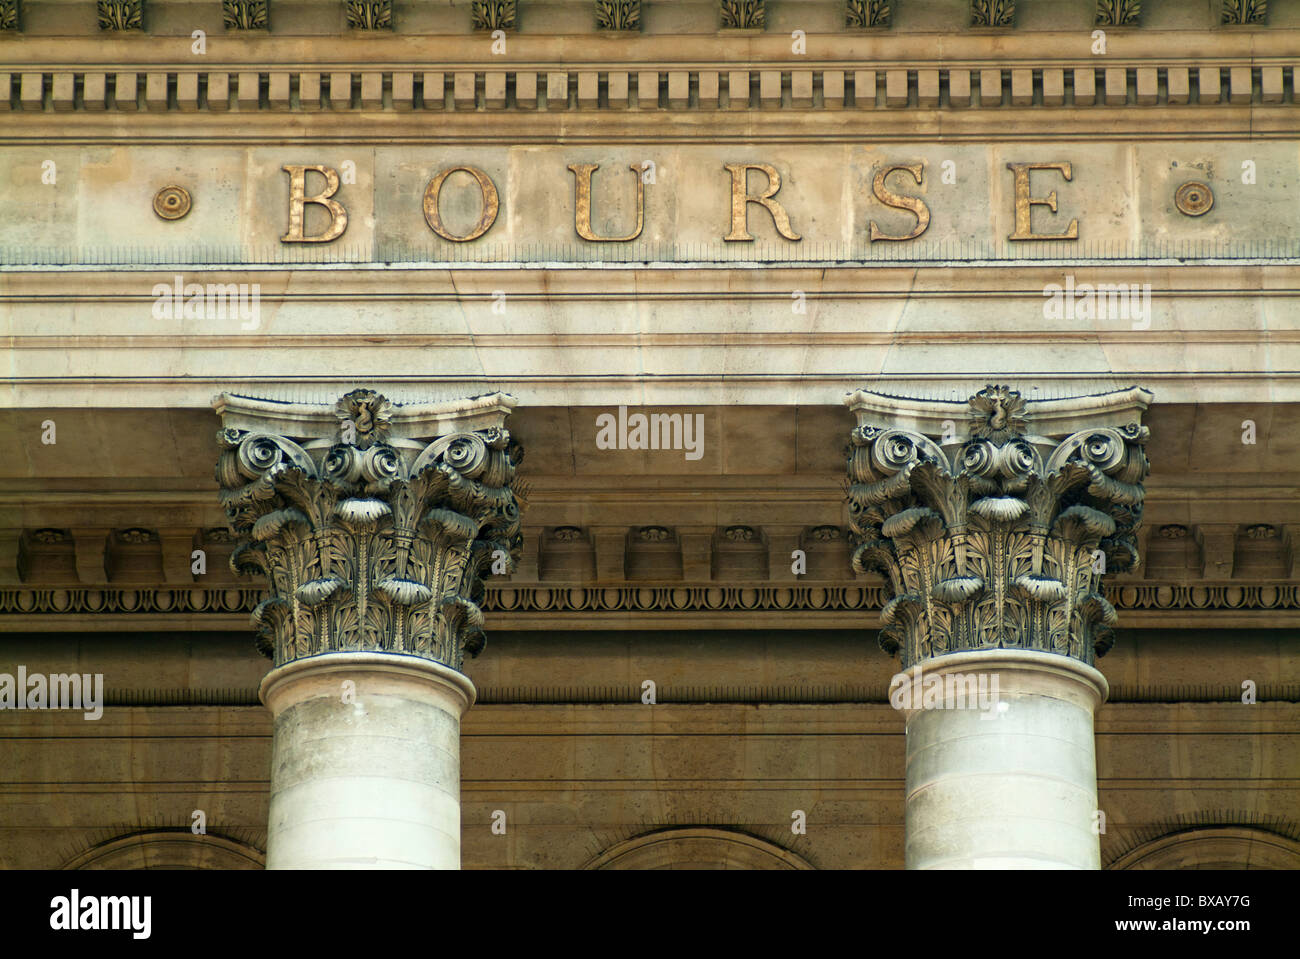 Paris Bourse Stock Exchange Building, Paris, France. Stock Photo